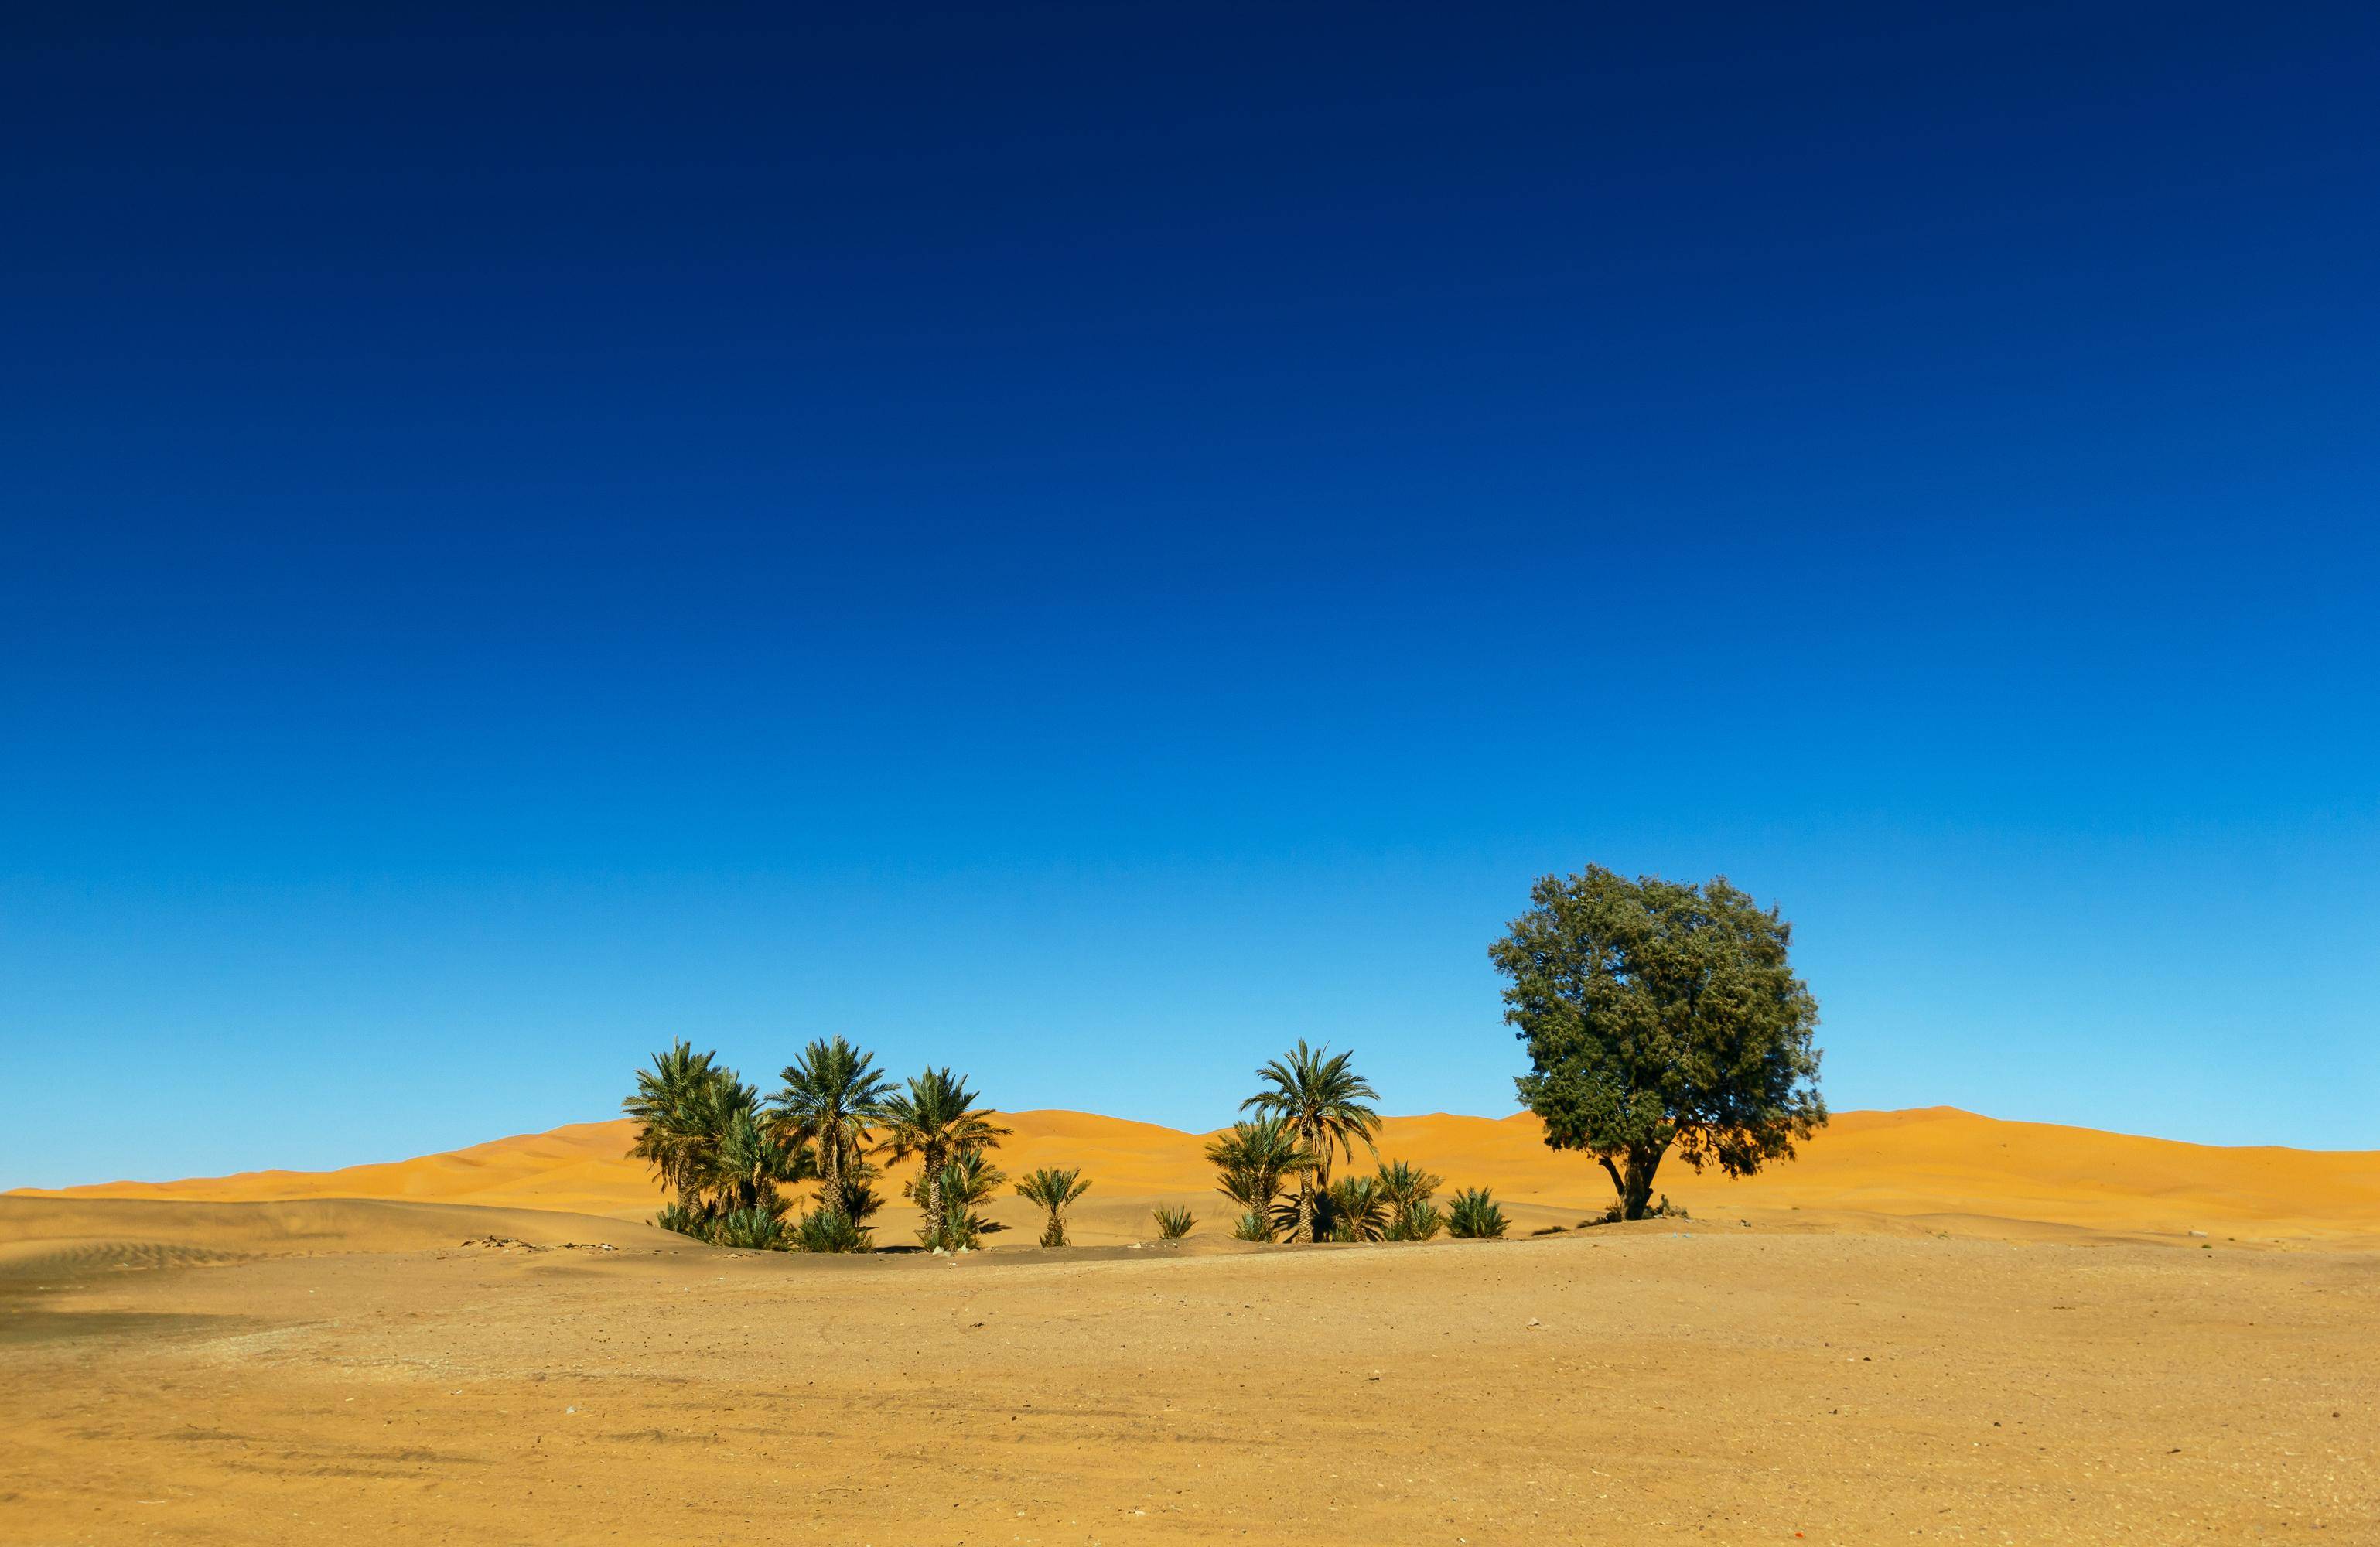 研究表明:仅撒哈拉沙漠就有18亿棵树!